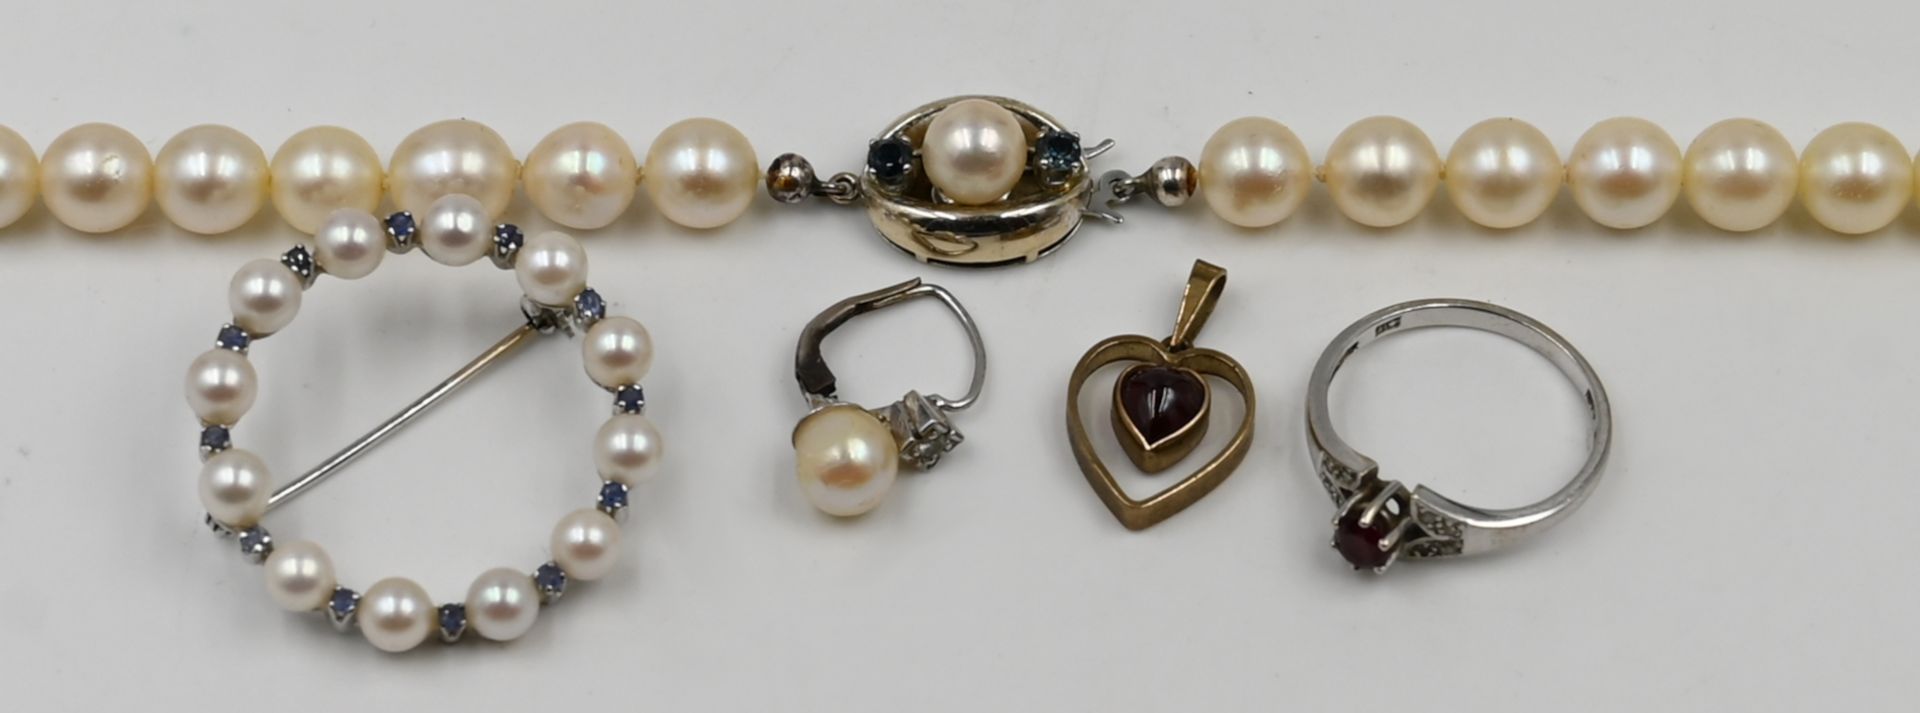 1 Brosche WG 18ct., mit Perlen und Saphiren, 1 Ohrring, 1 Ring, 1 Perlenkette, je WG 14ct., z.T. mit